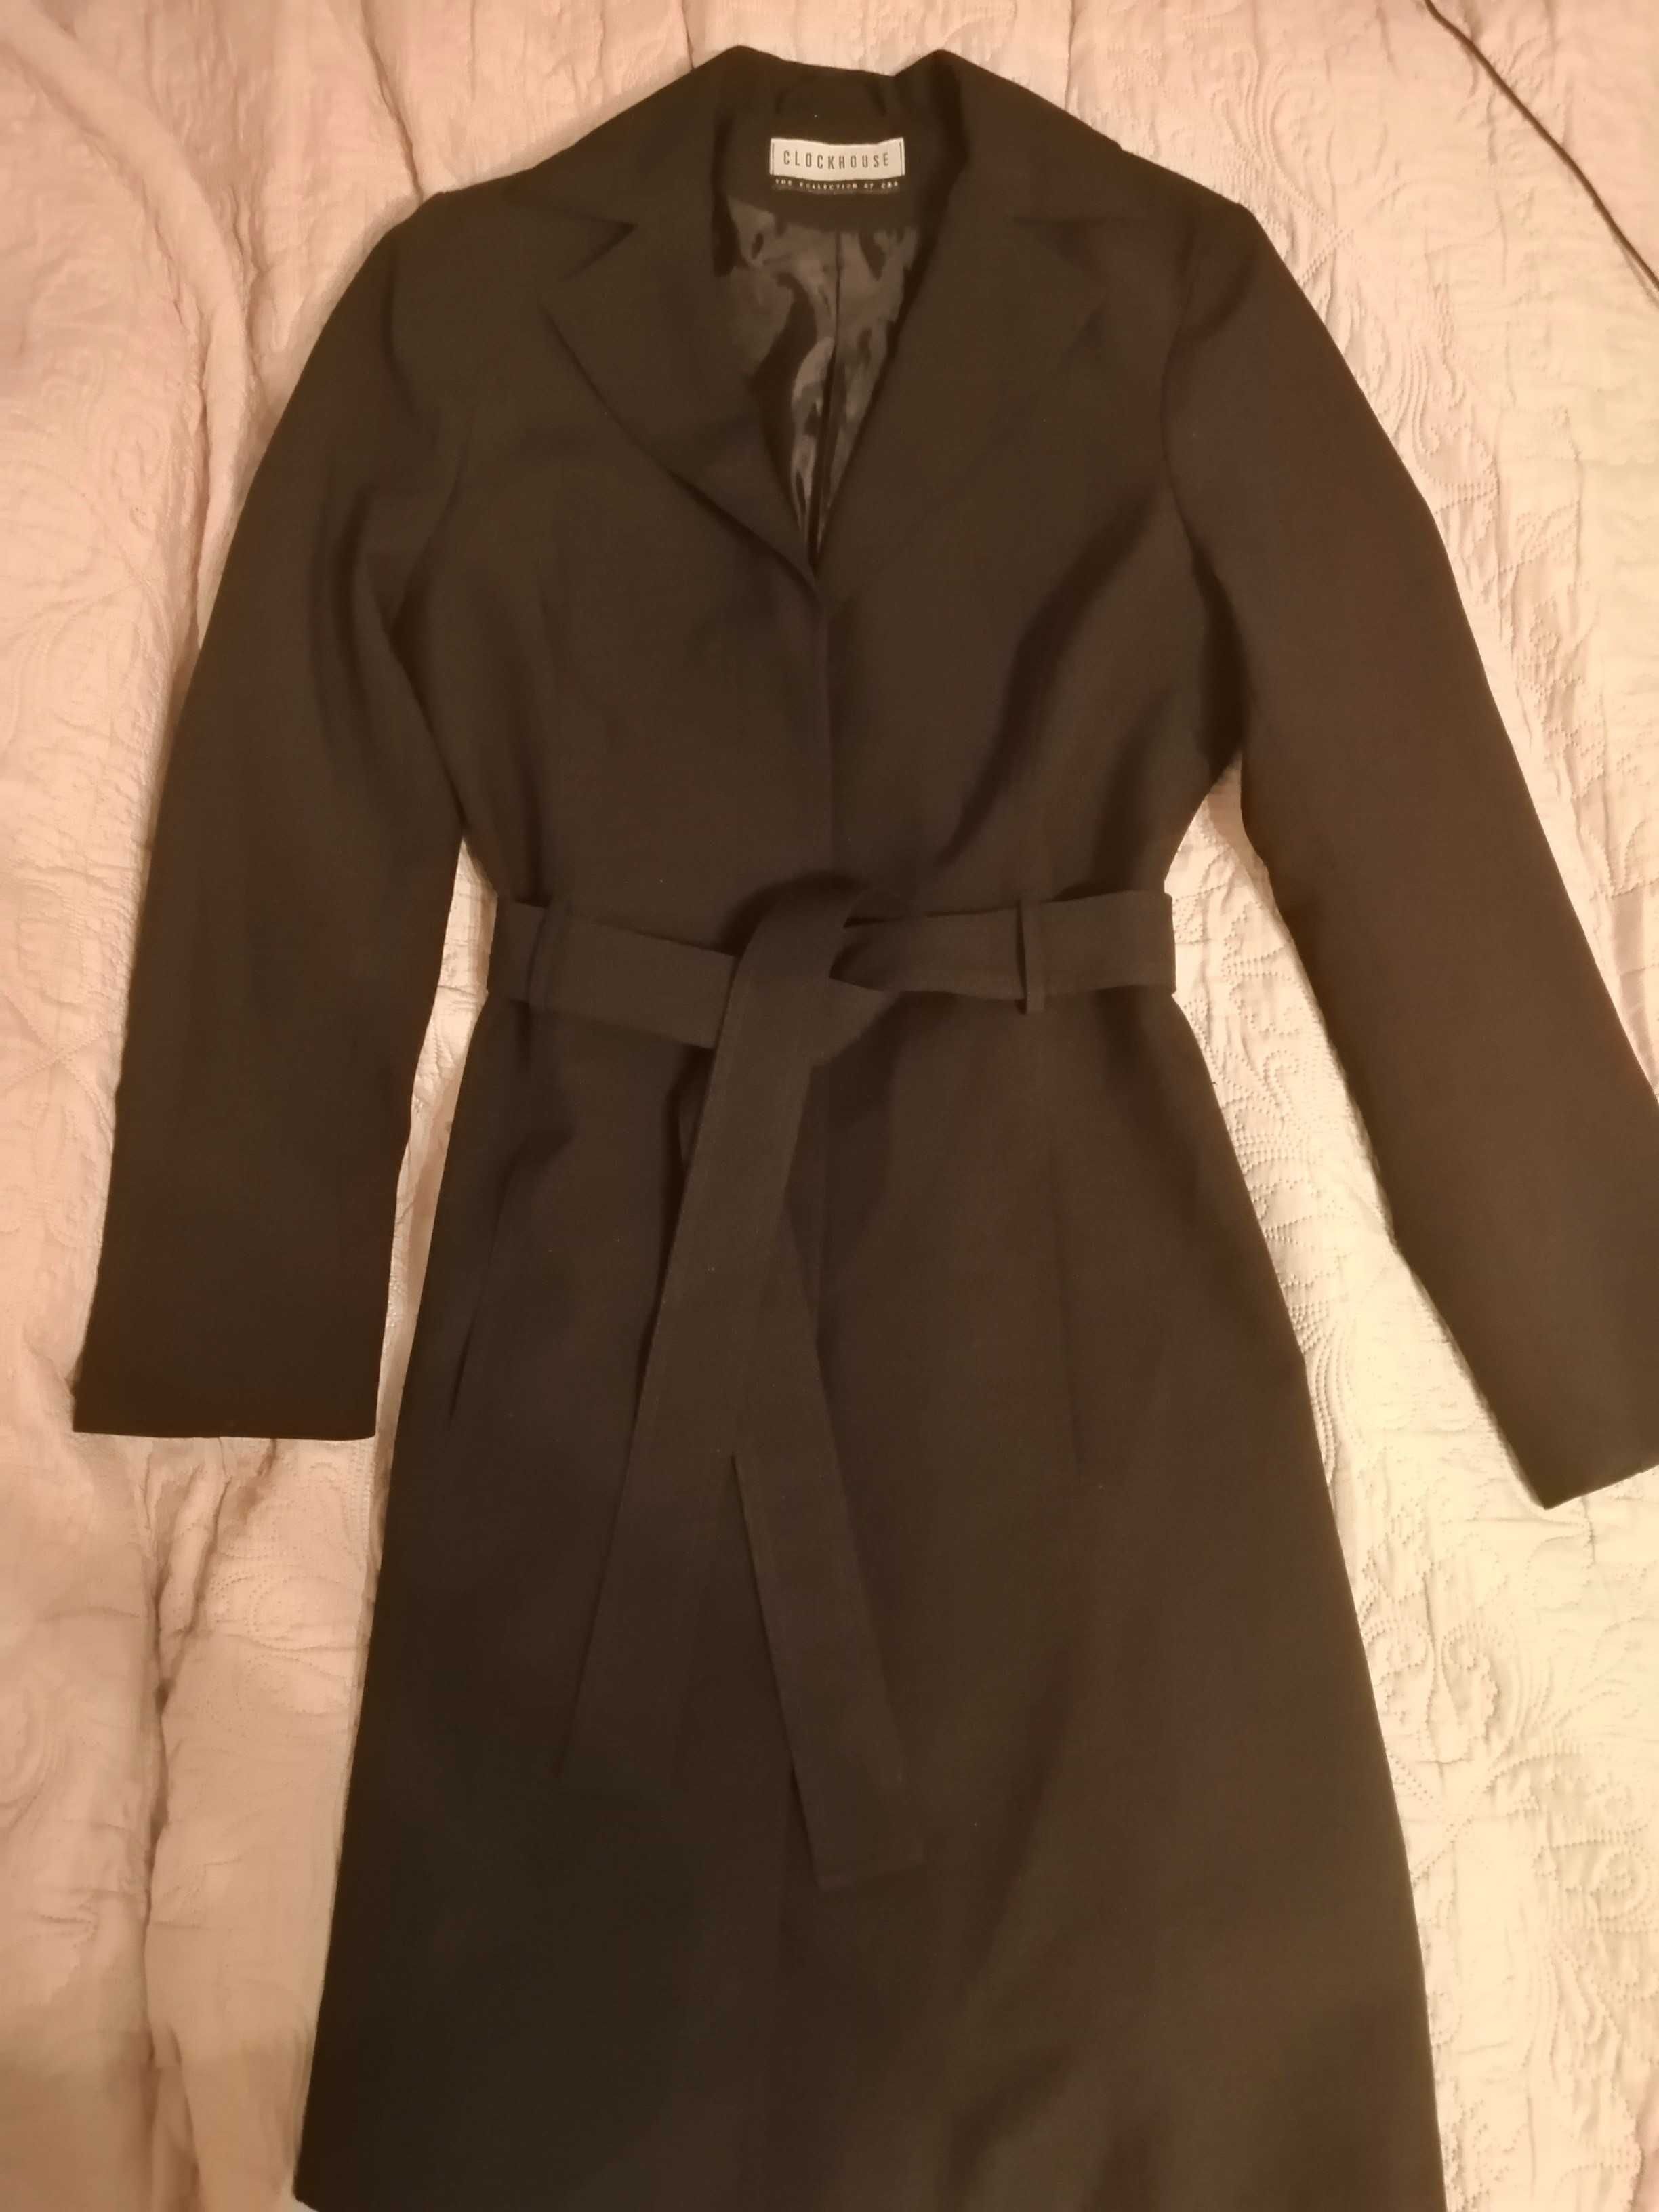 czarny cienki płaszcz damski poliester rozmiar 36